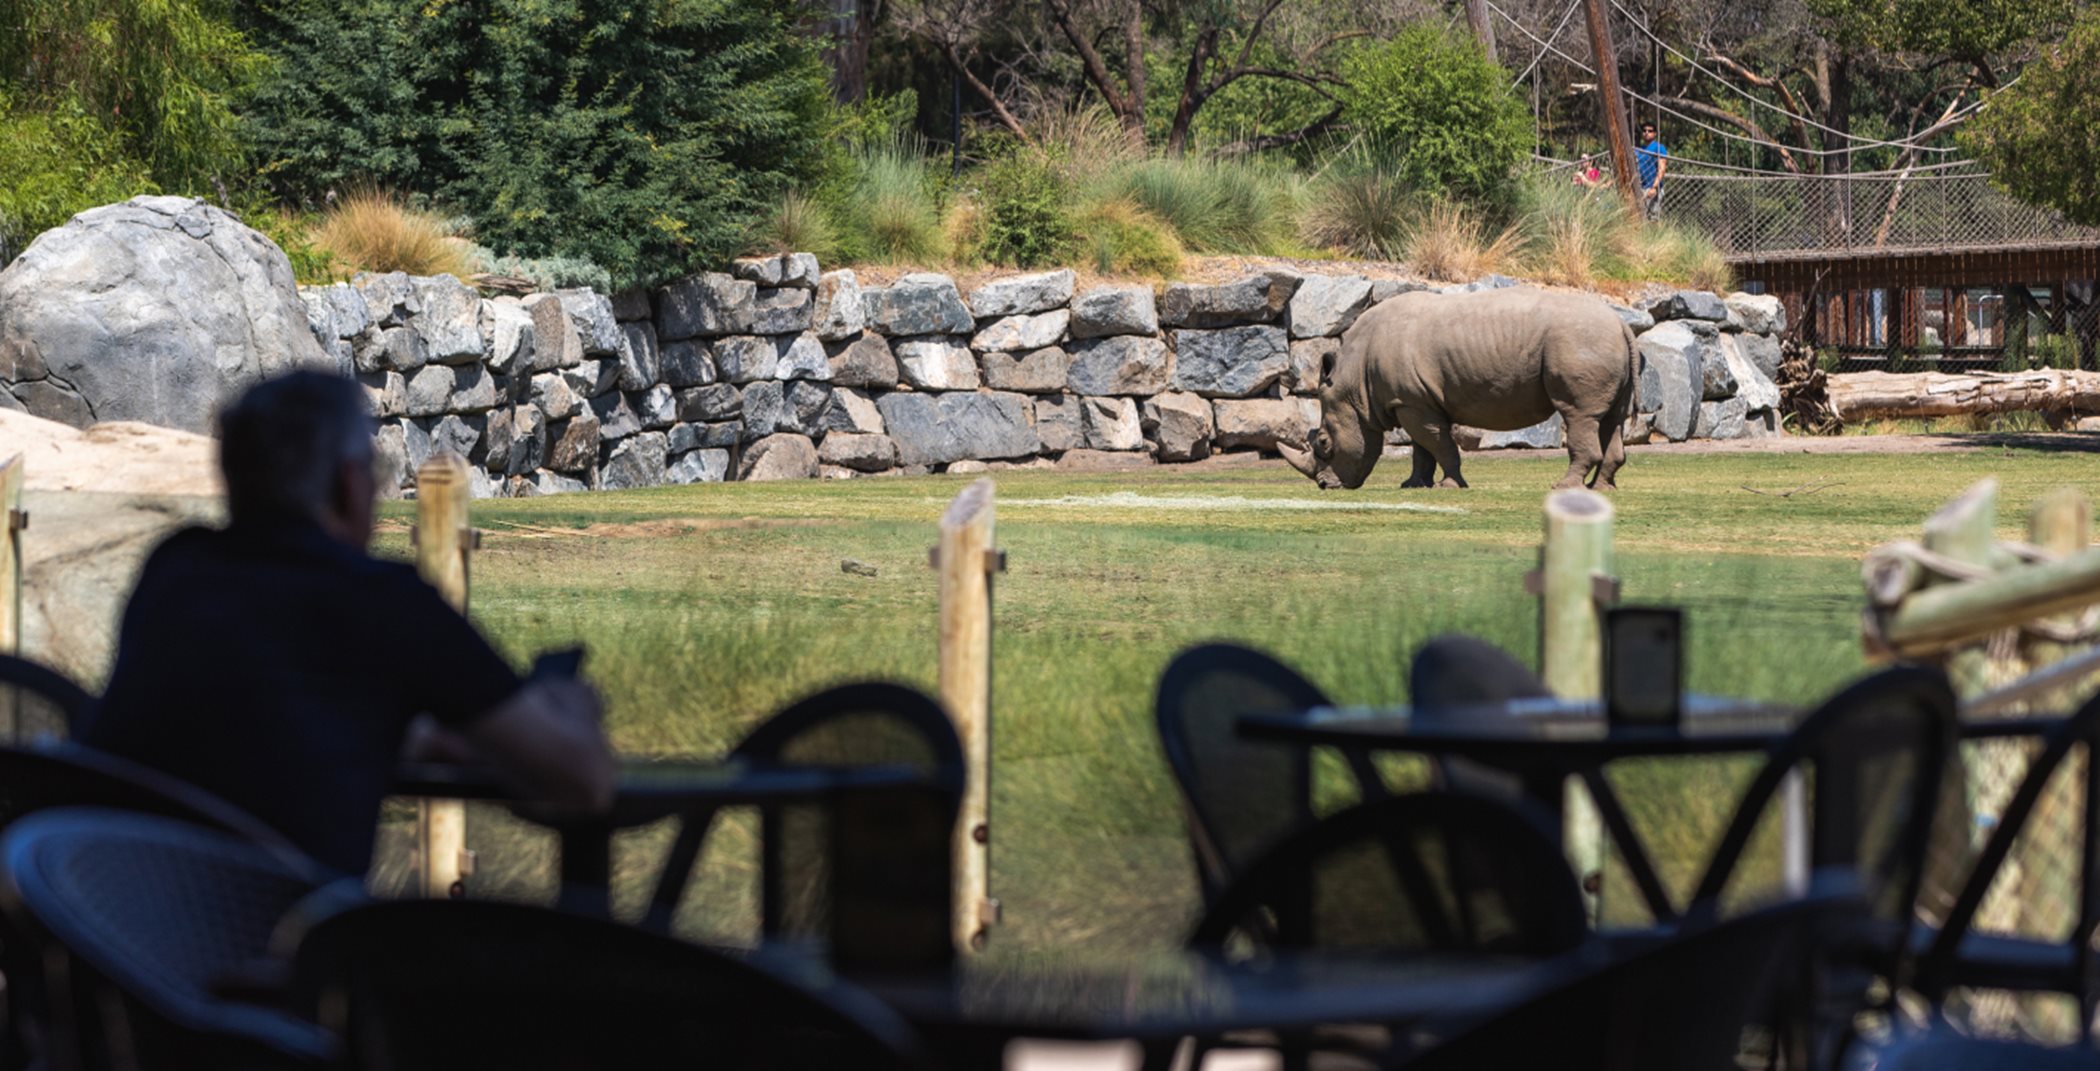 Fresno Chaffee Zoo seating area overlooking rhino habitat